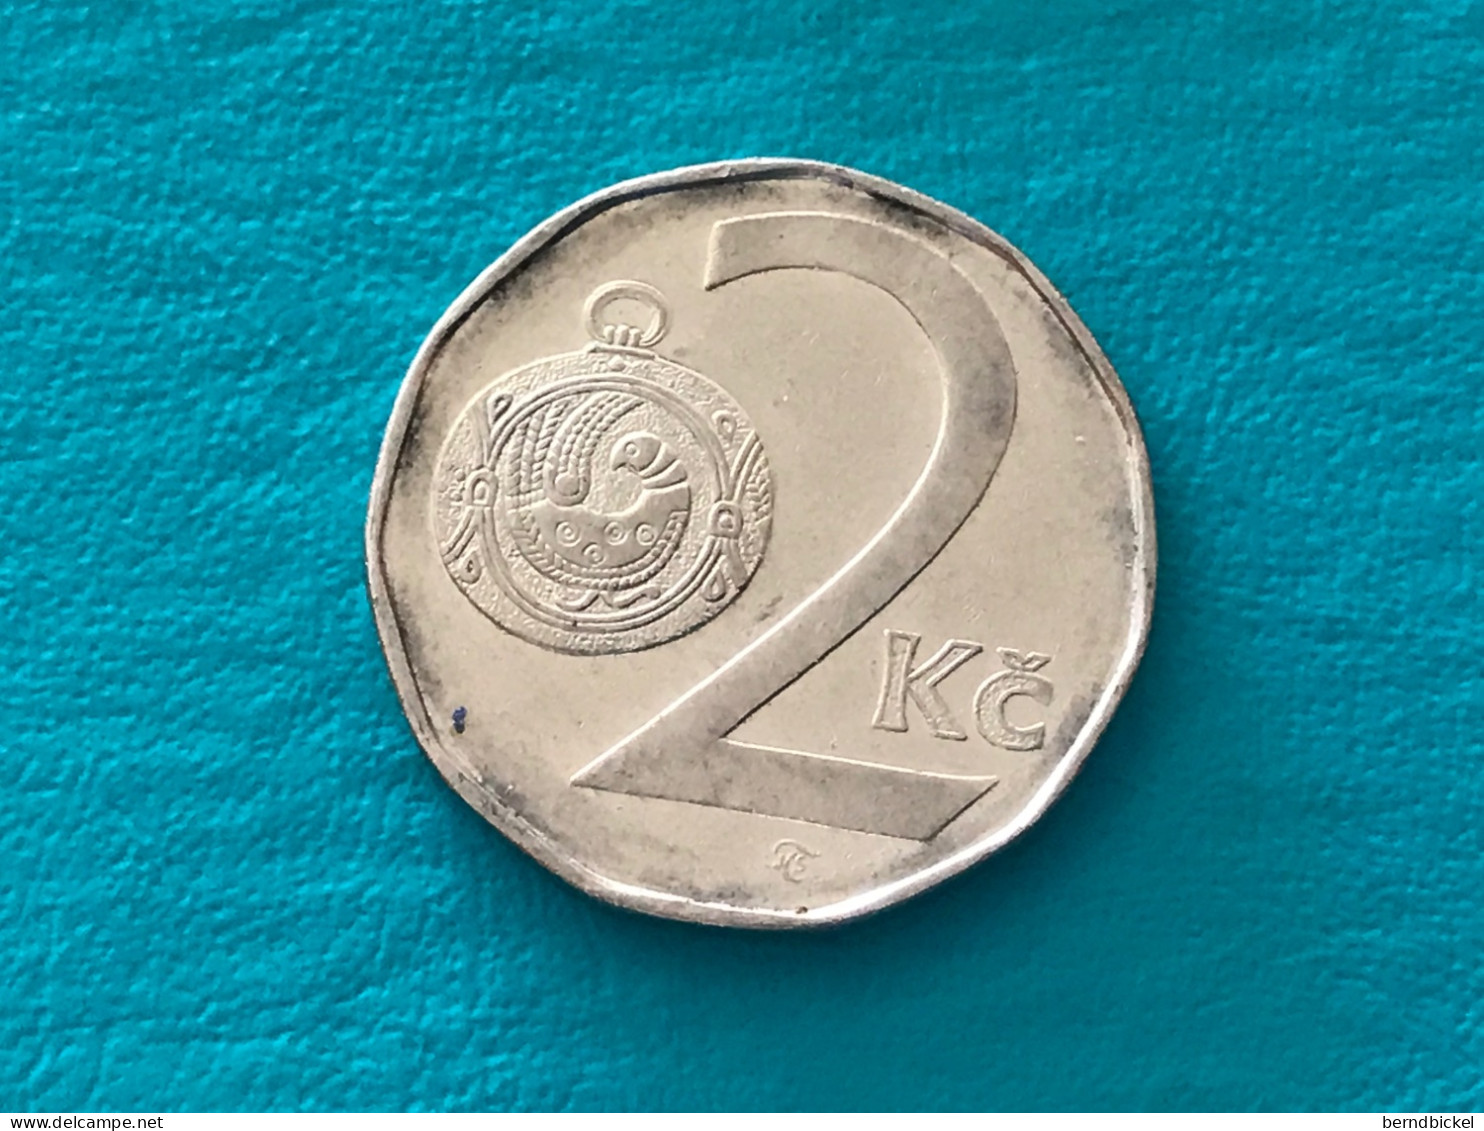 Münze Münzen Umlaufmünze Tschechien 2 Koruna 1993 - Tsjechië